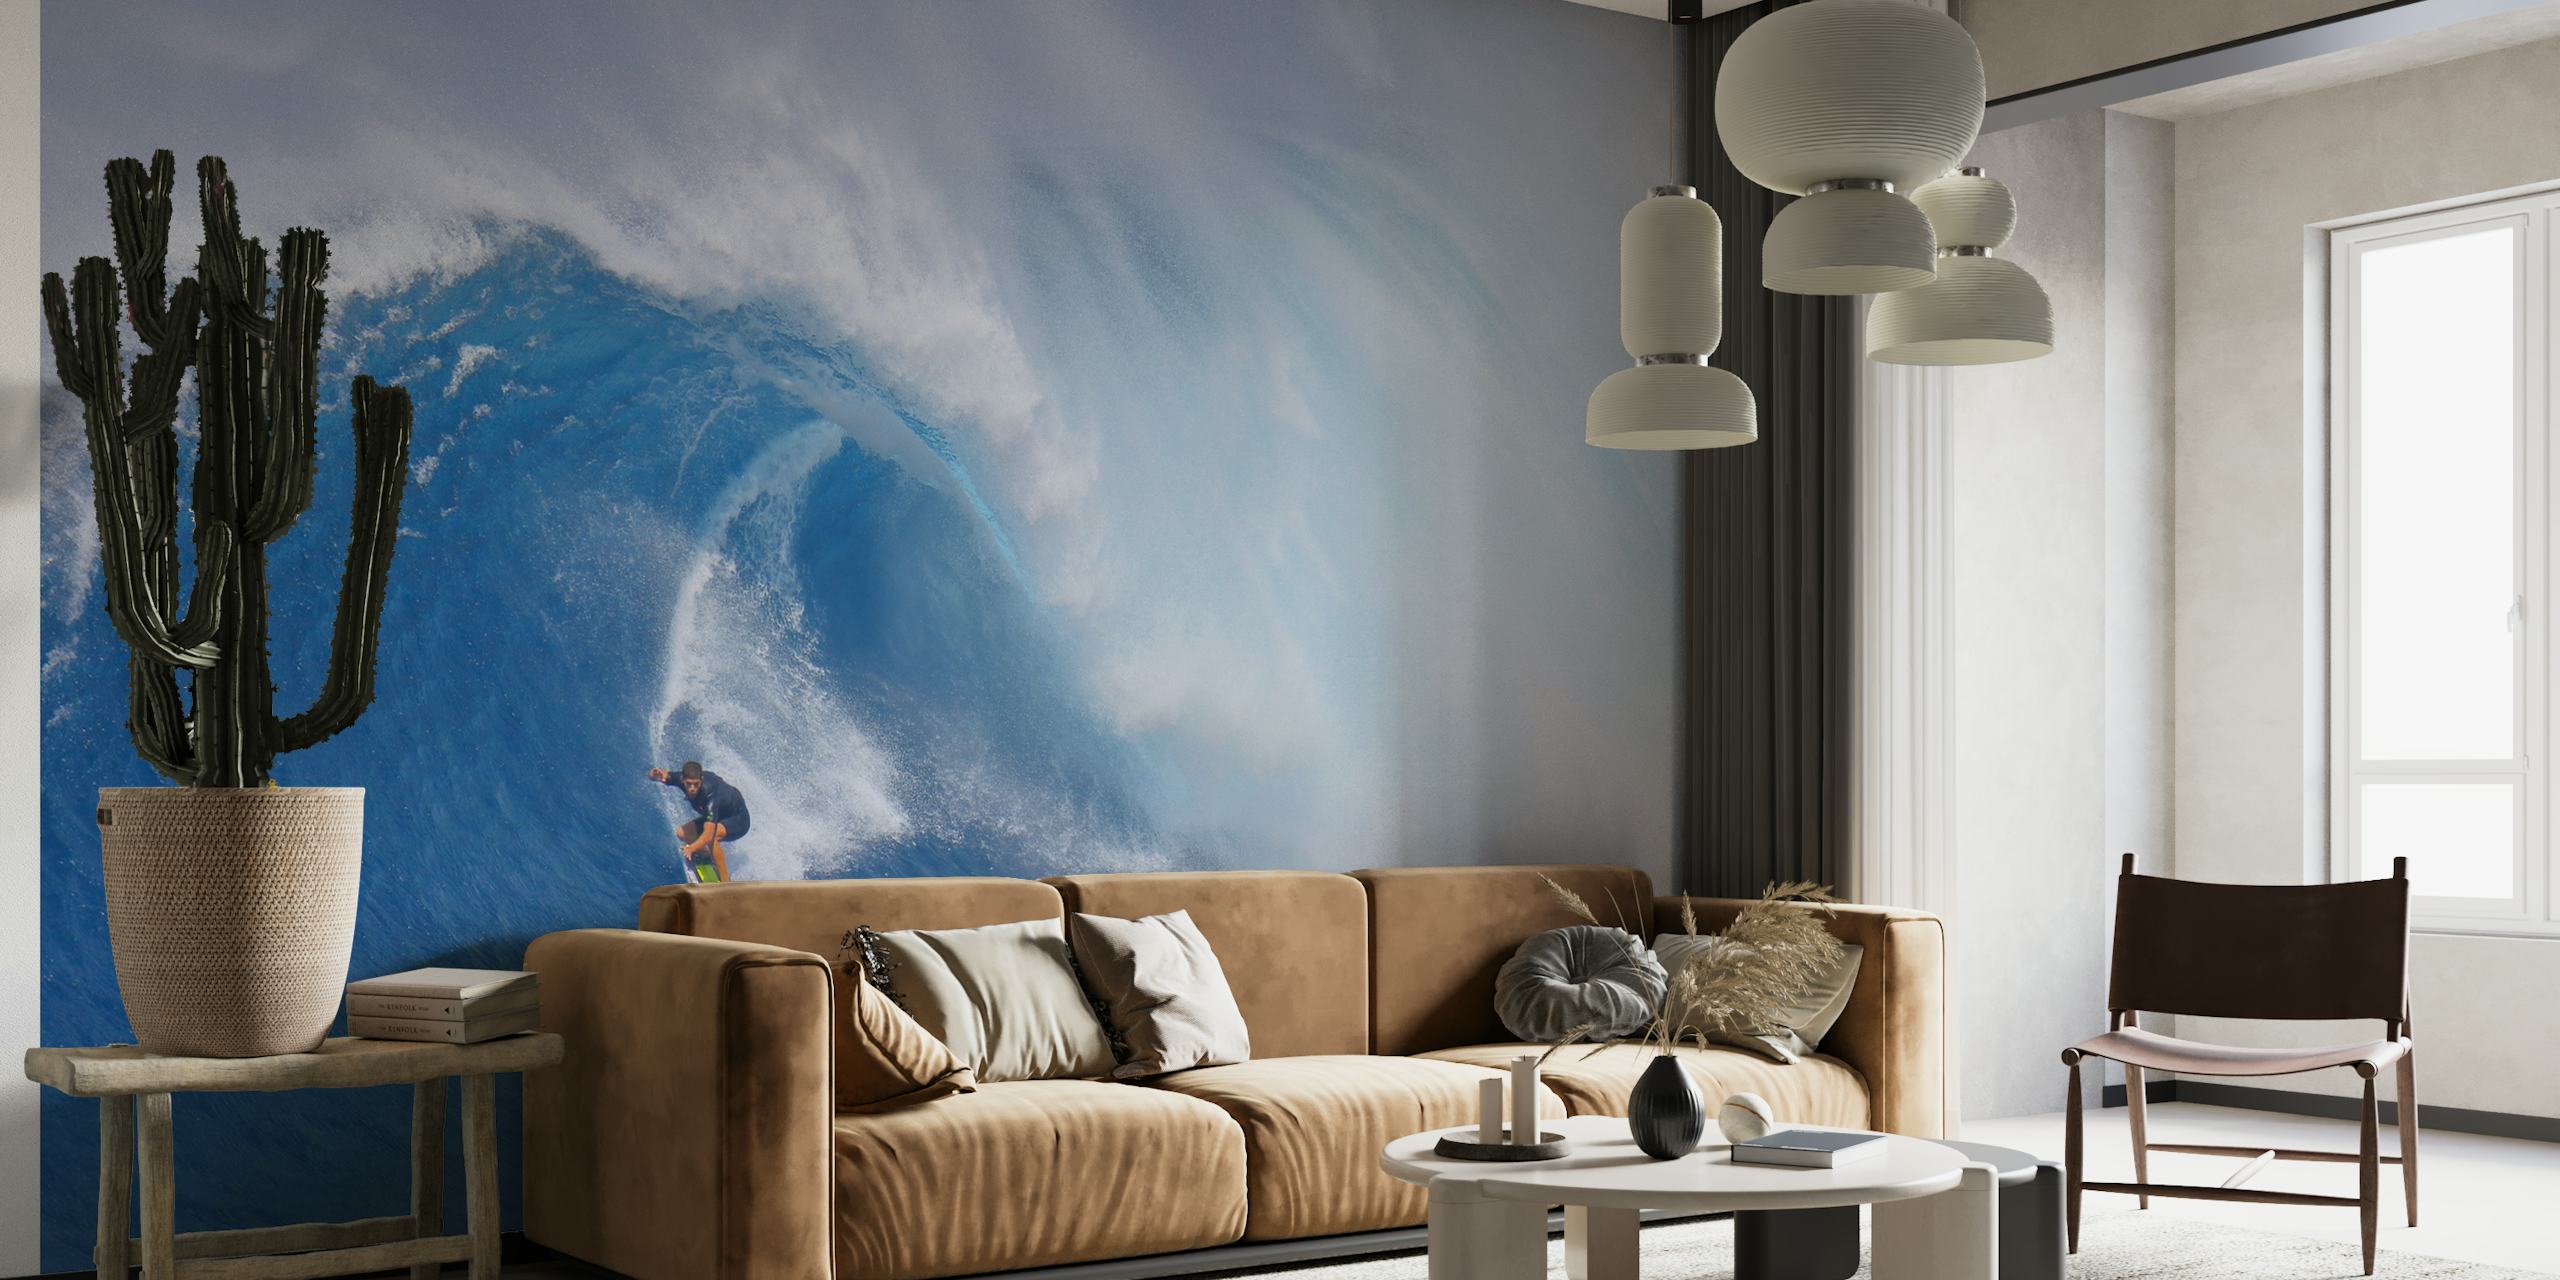 Surfista surfando em uma onda gigante no mural 'Surfing Jaws'